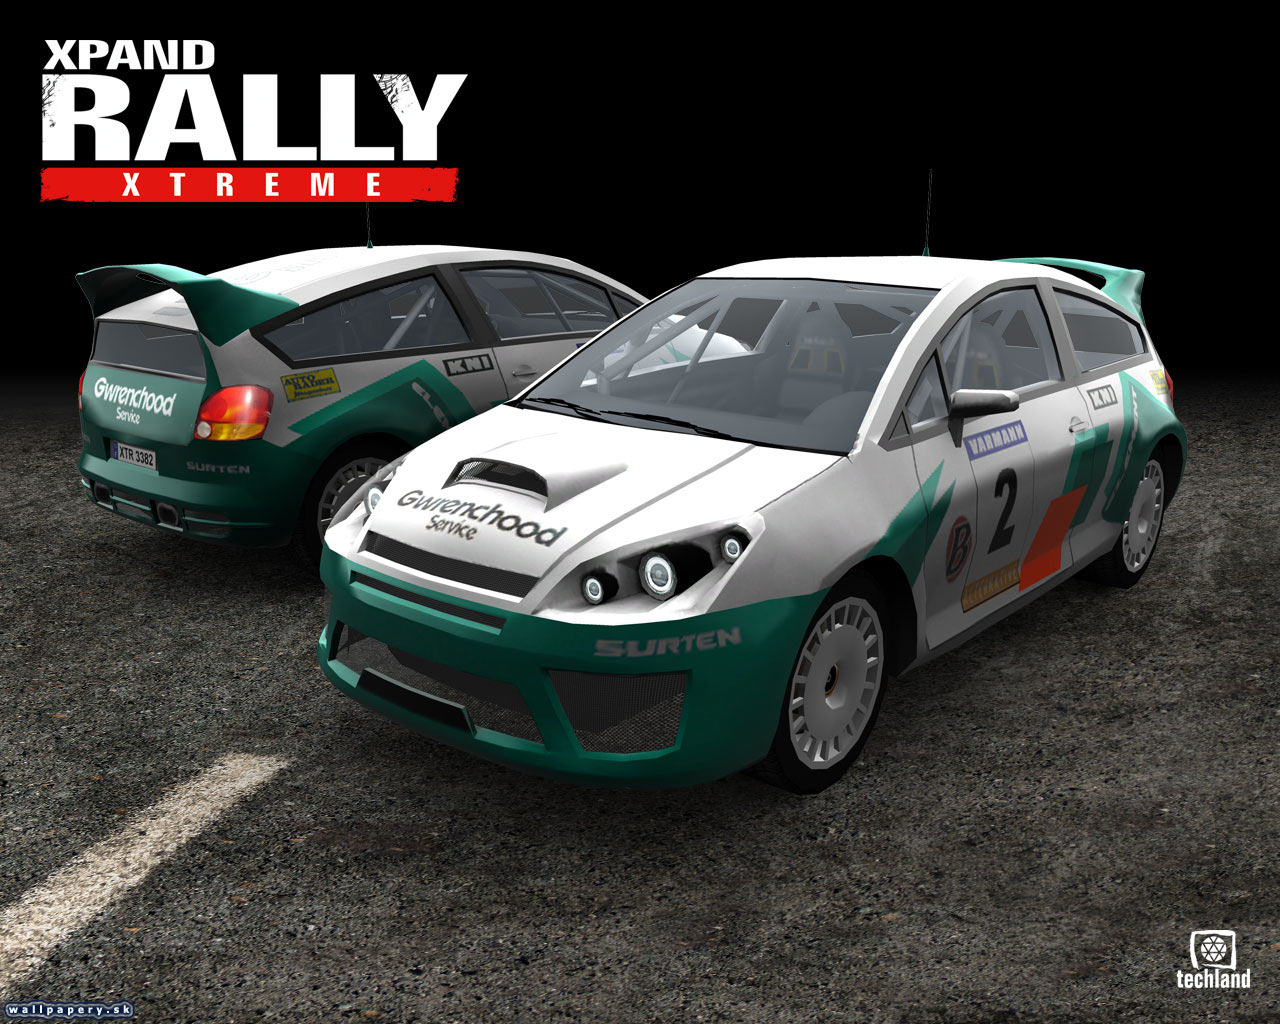 Xpand Rally Xtreme - wallpaper 6